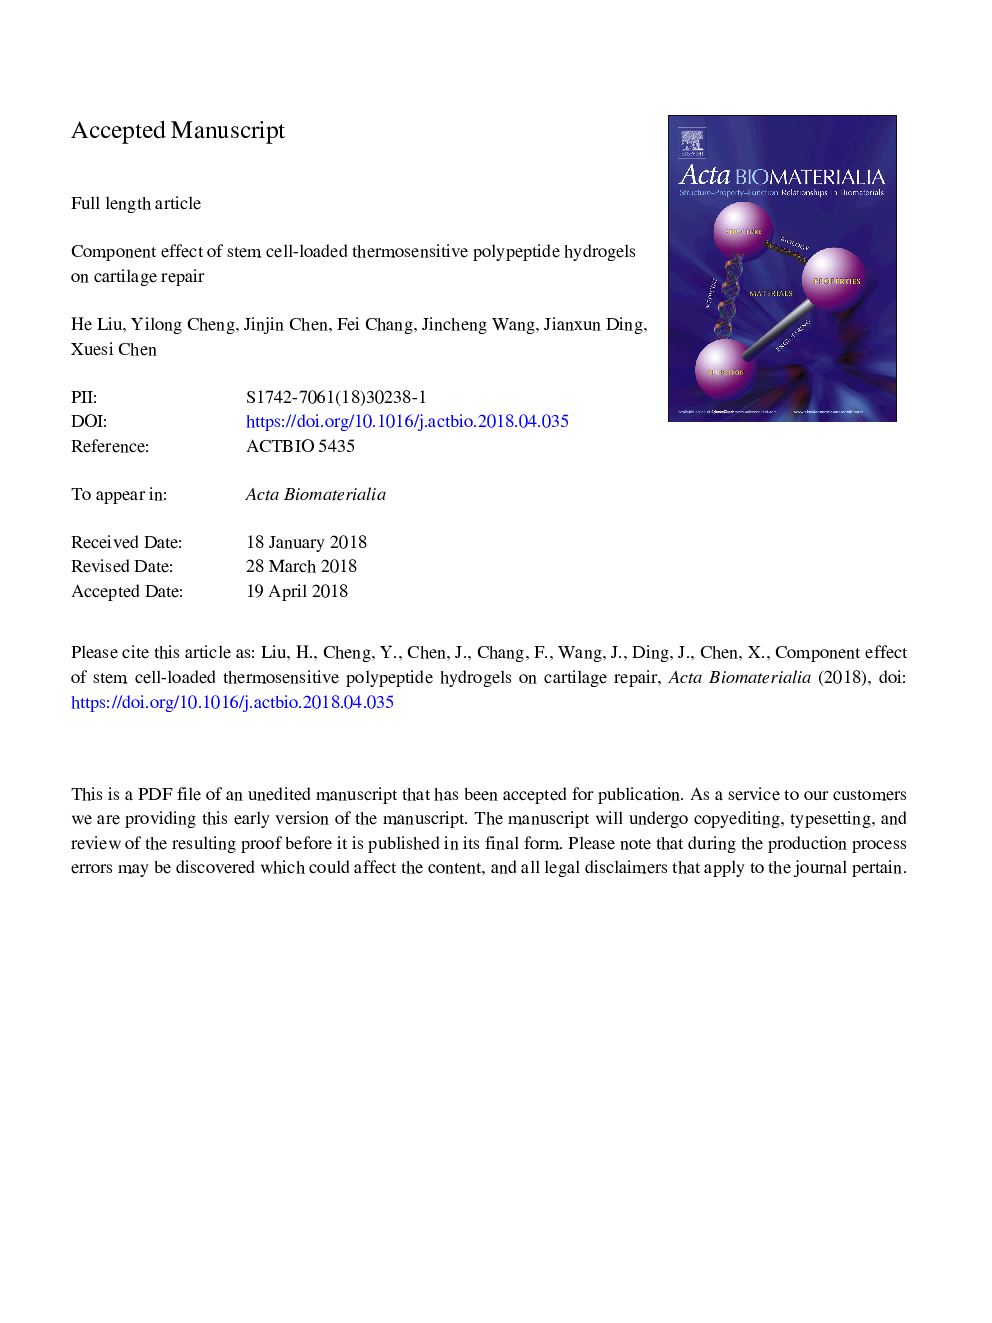 اثر کامپاندی هیدروژلهای پلی پپتید گرماسنج حساس به سلول های بنیادی در تعمیر غضروف 